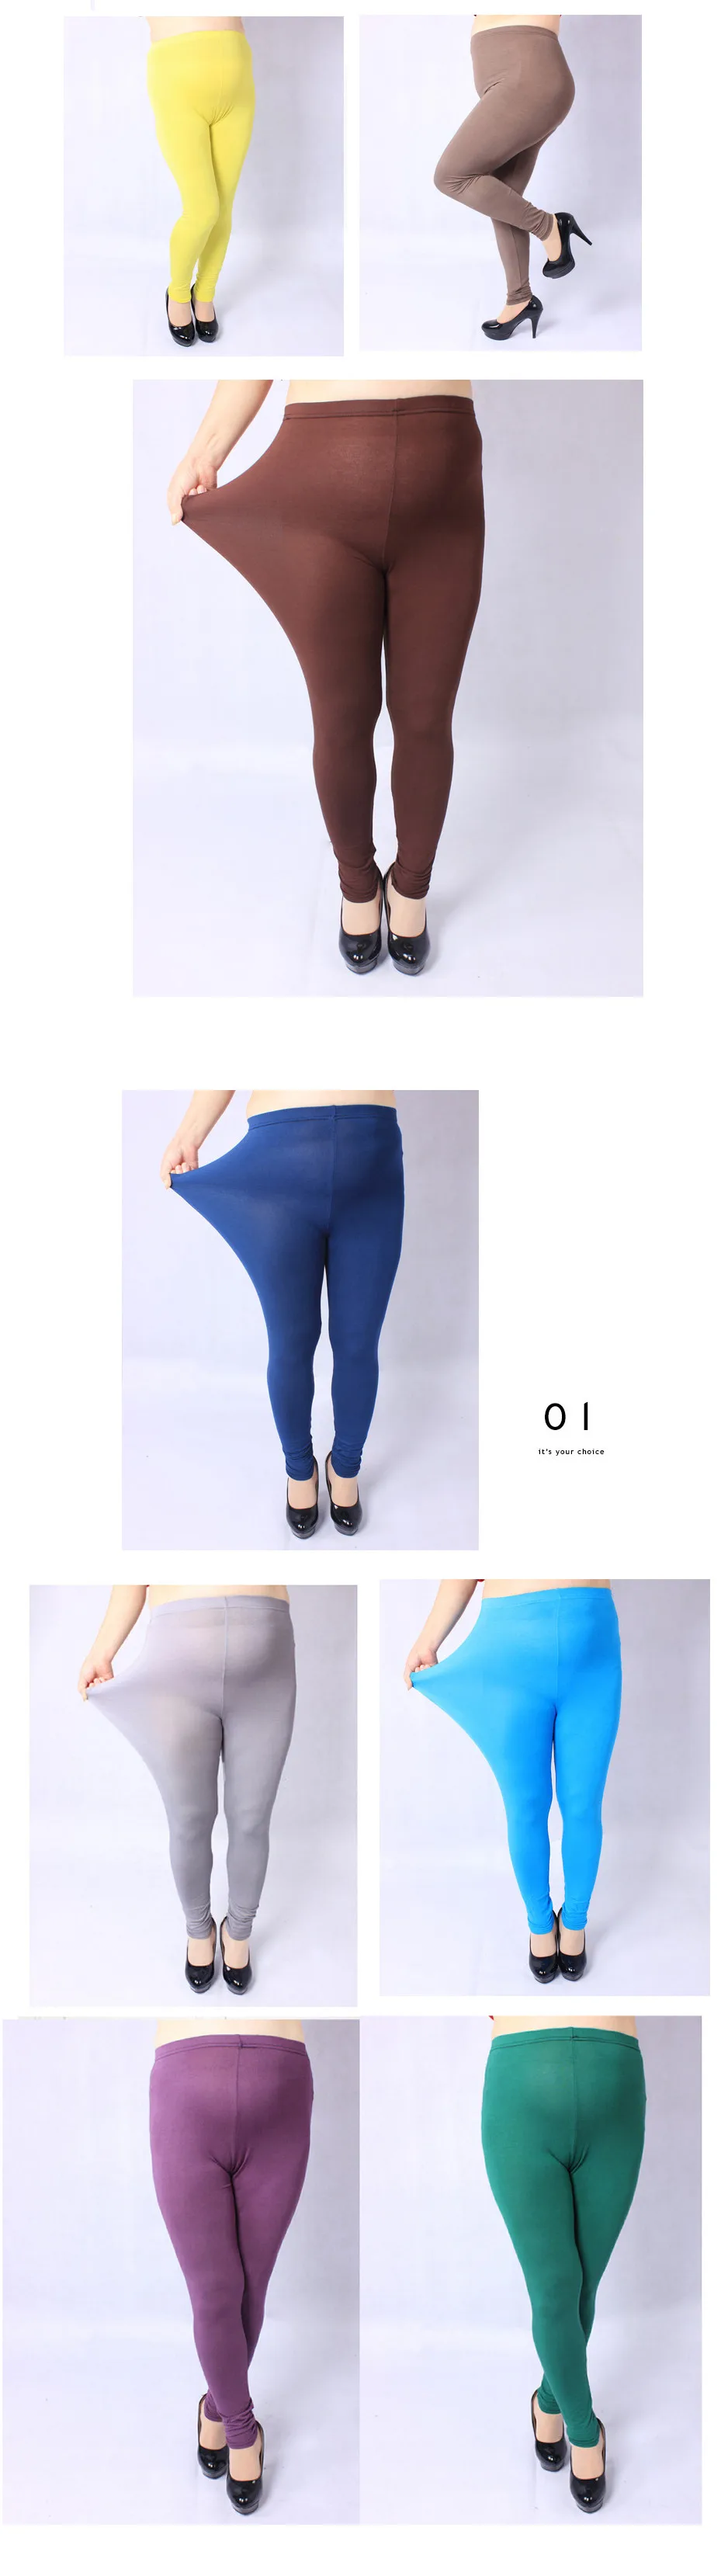 Леггинсы для женщин сезон: весна-лето высокие эластичные синие Черные Леггинсы Butt кнопка для лифта до брюки девочек плюс размеры ouc1516